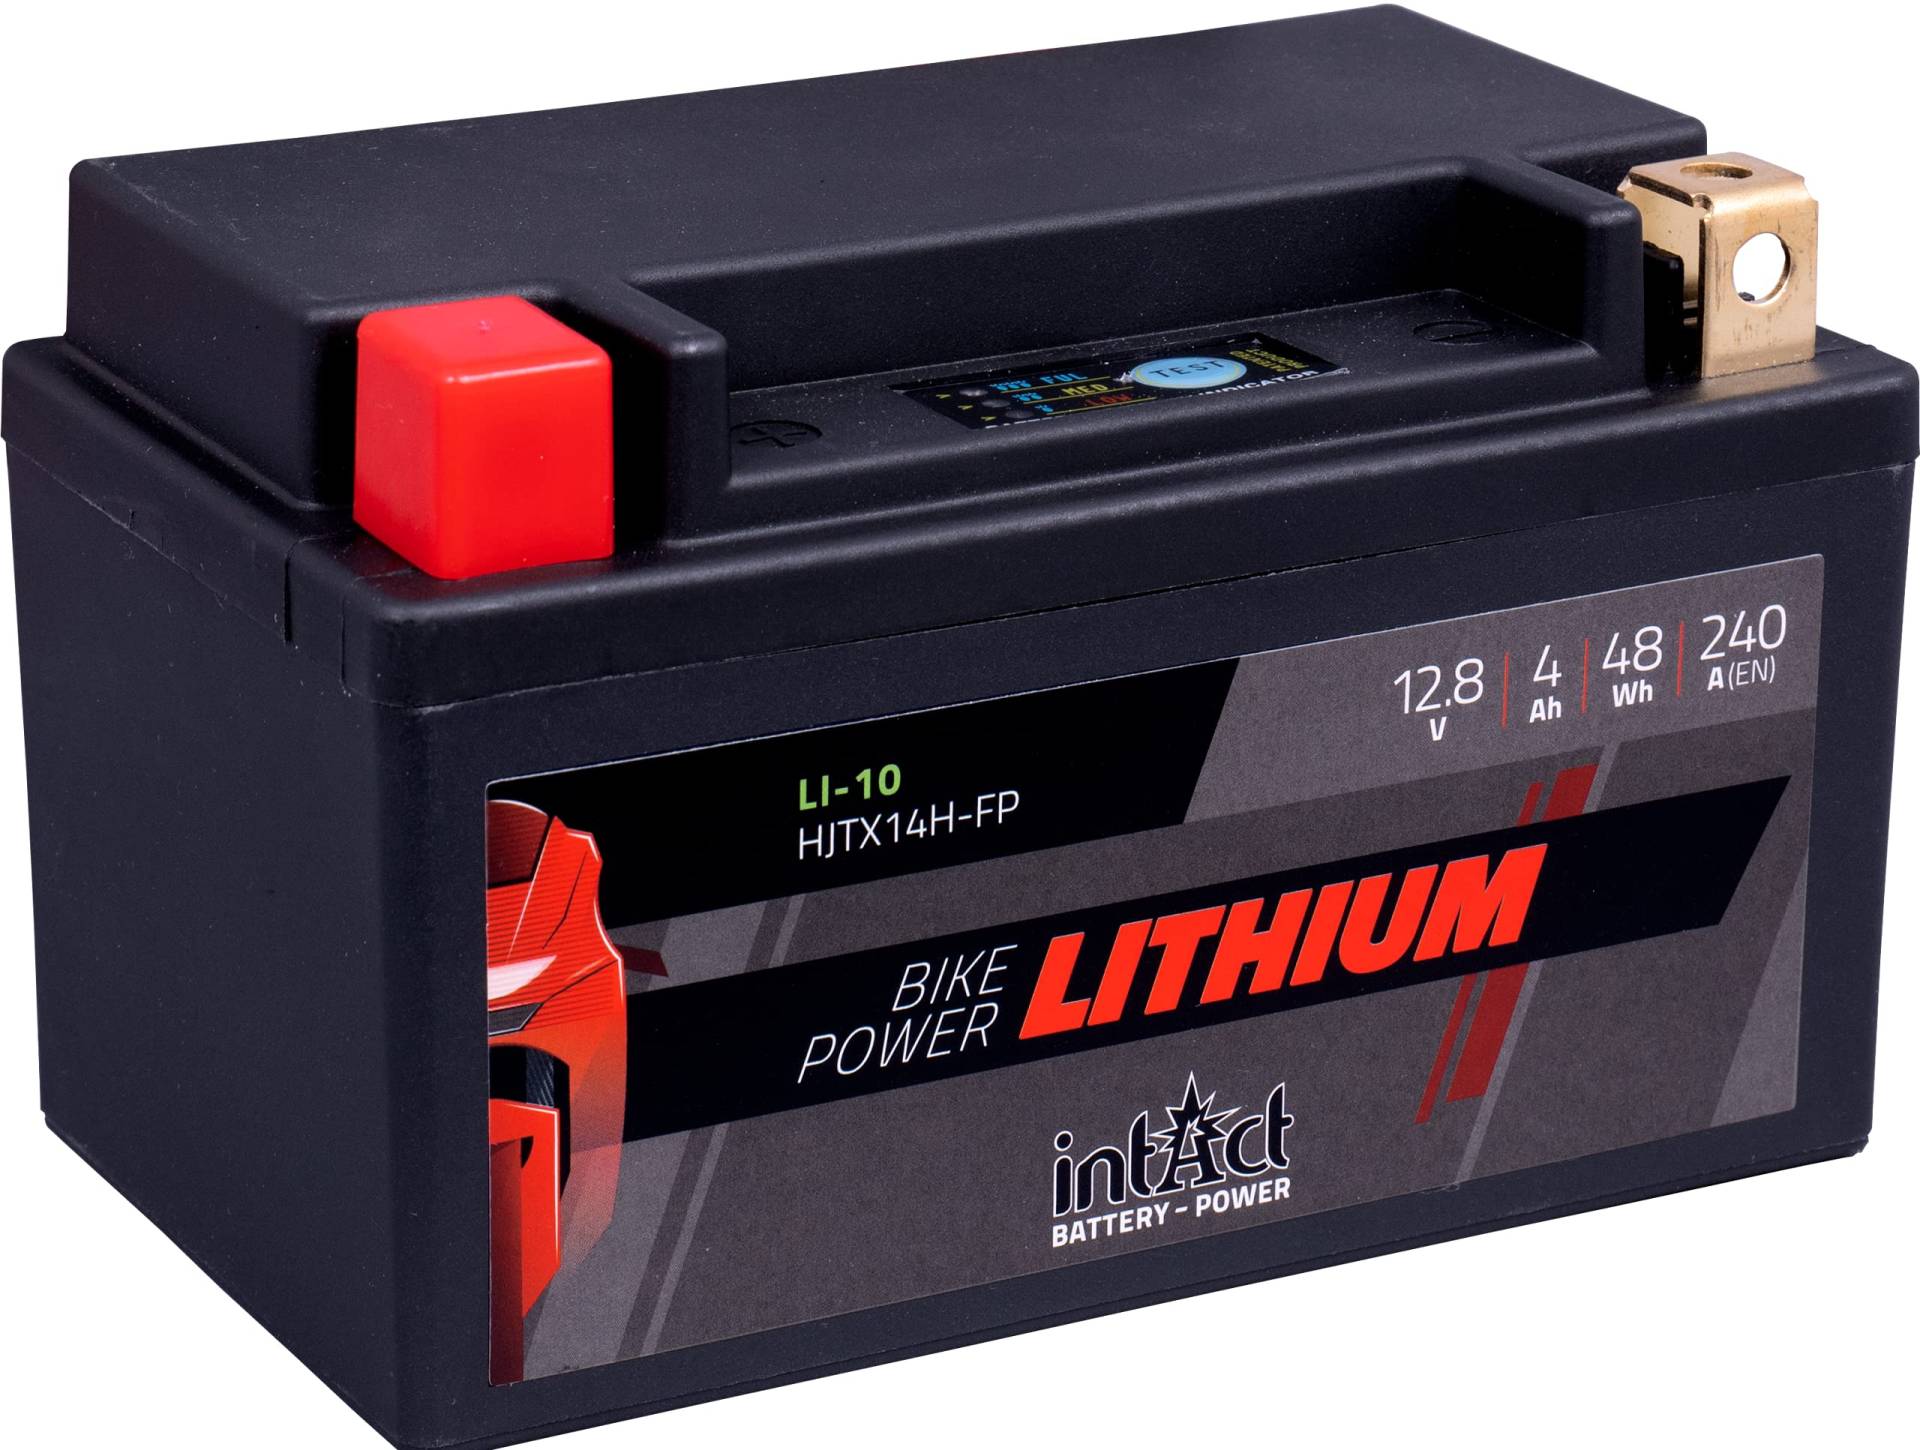 intAct - LITHIUM MOTORRADBATTERIE | Batterie für Roller, Motorrad, Quads uvm. Bis zu 75% Gewichtseinsparung | Bike-Power LI-10, HJTX14H-FP, 12,8V Batterie, 4 AH (c10), 48 Wh, 240 A (CCA) | Maße: 150x87x94mm von Intact